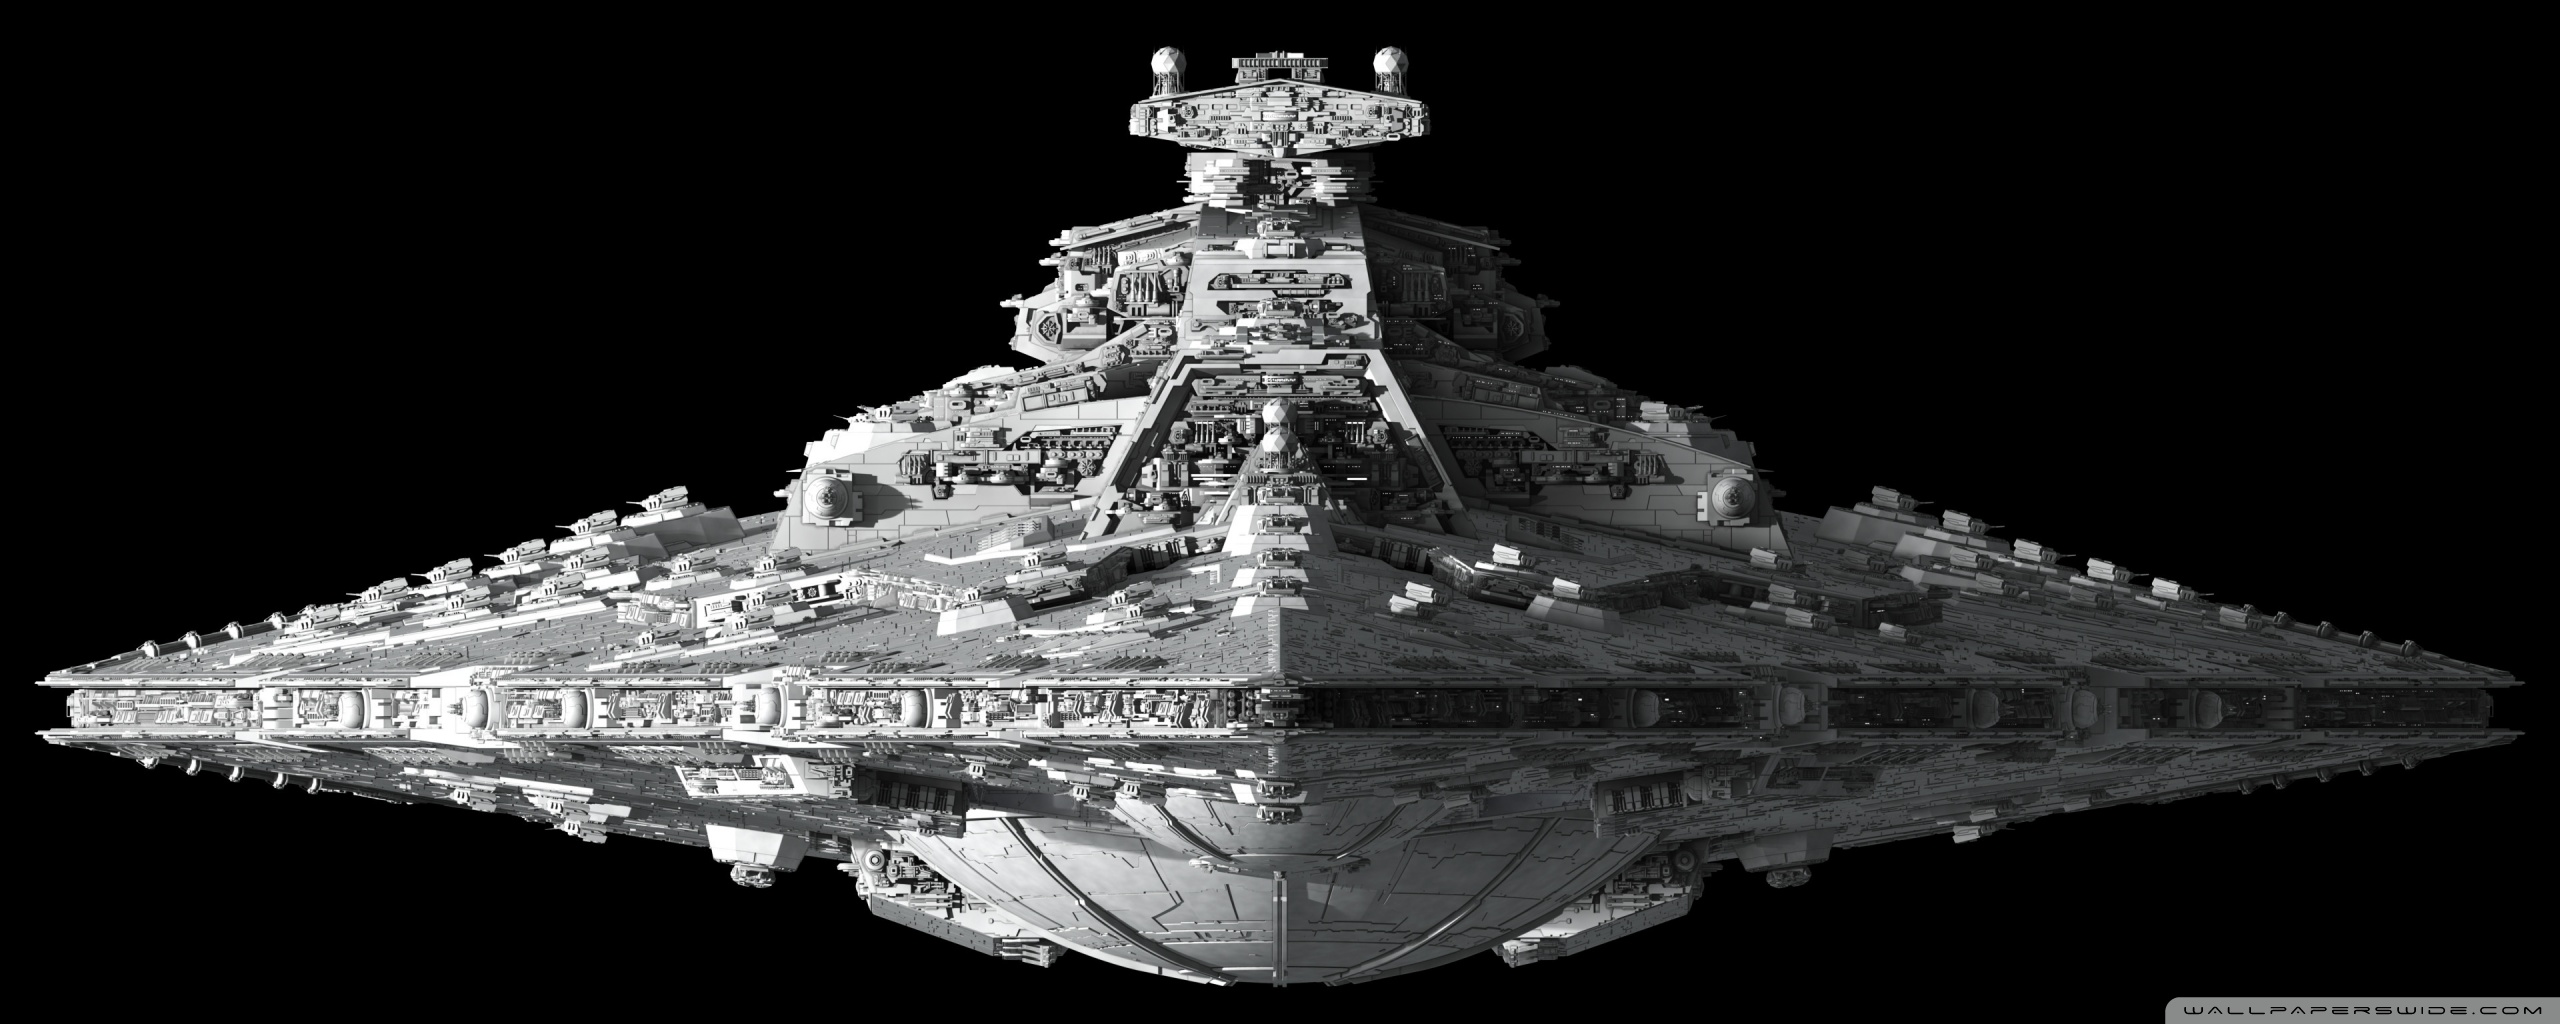 fond d'écran double écran star wars,bataille navale,véhicule,navire,croiseur de bataille,noir et blanc